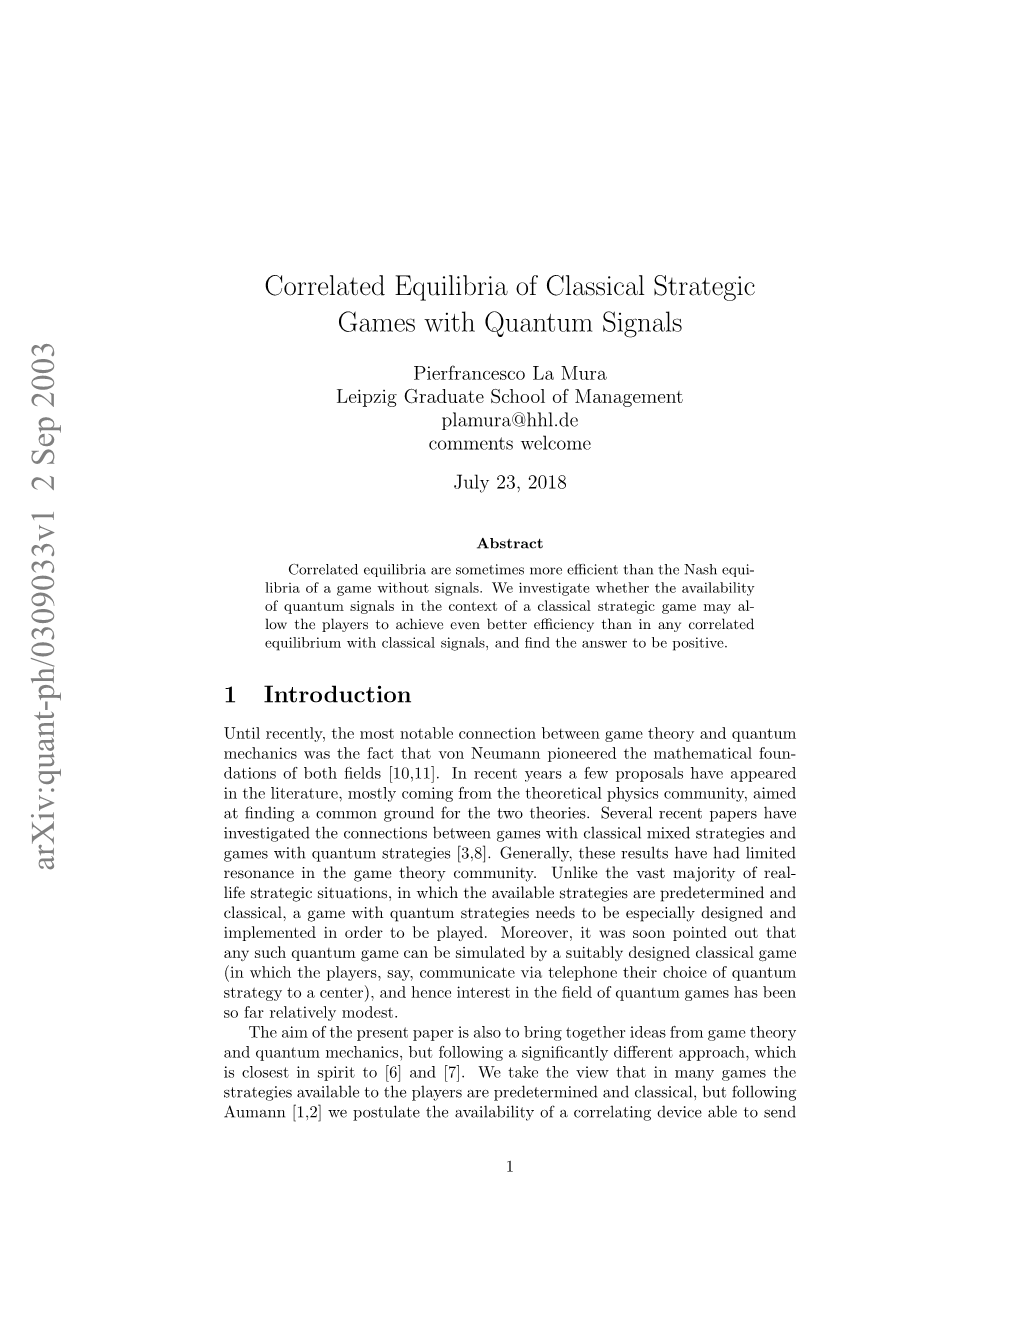 Correlated Equilibria of Classical Strategic Games with Quantum